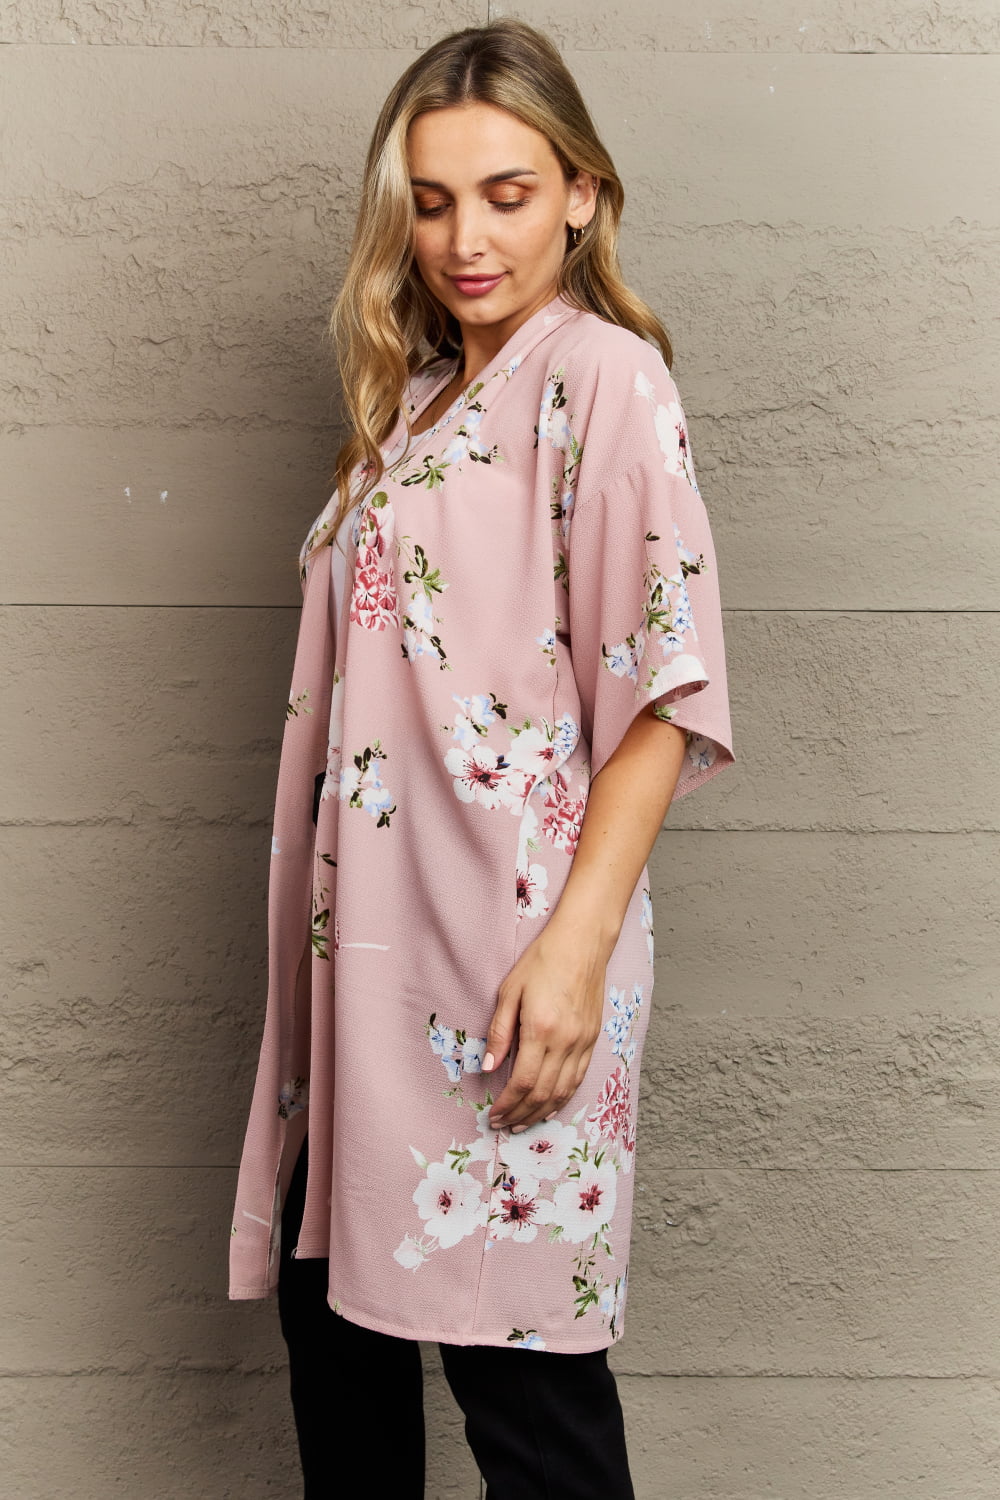 Floral Kimono in Blush Pink